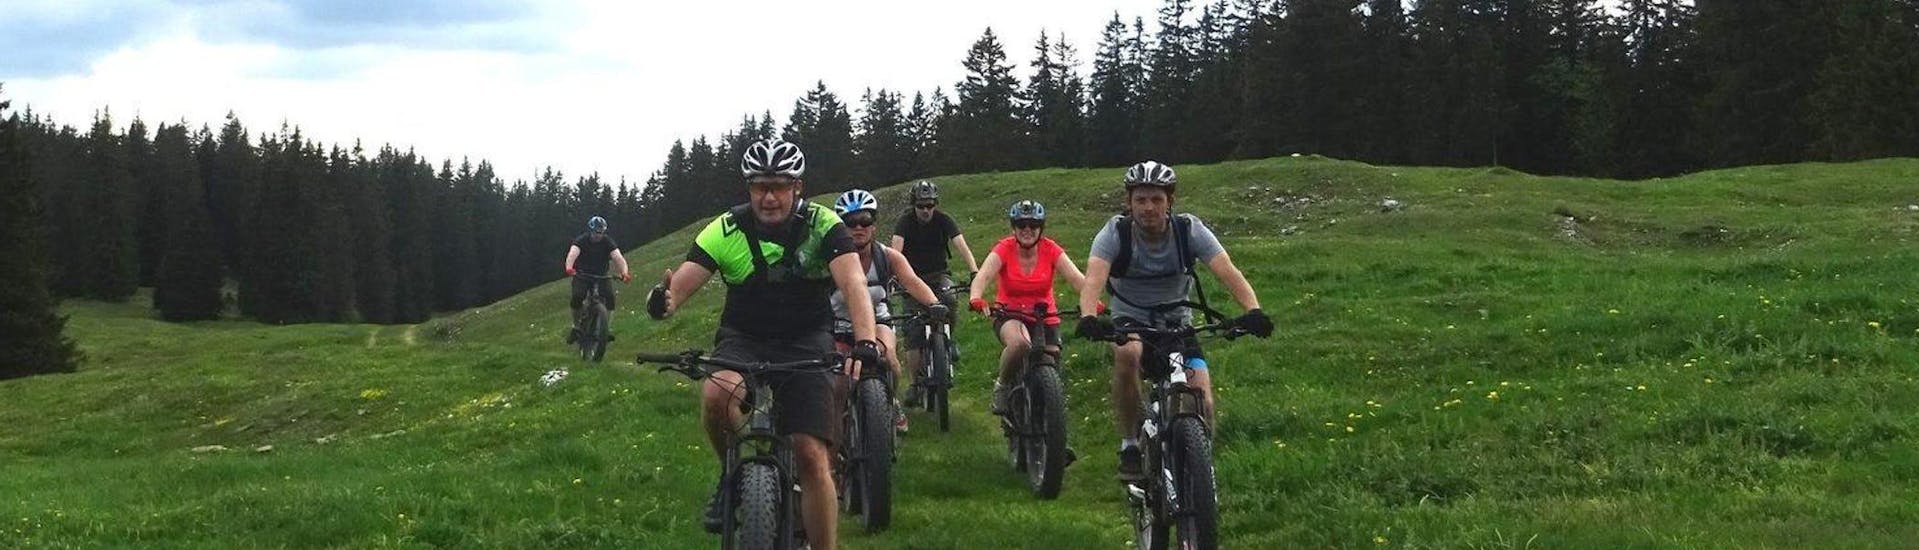 Mountainbike tour - Parc Jura vaudois.